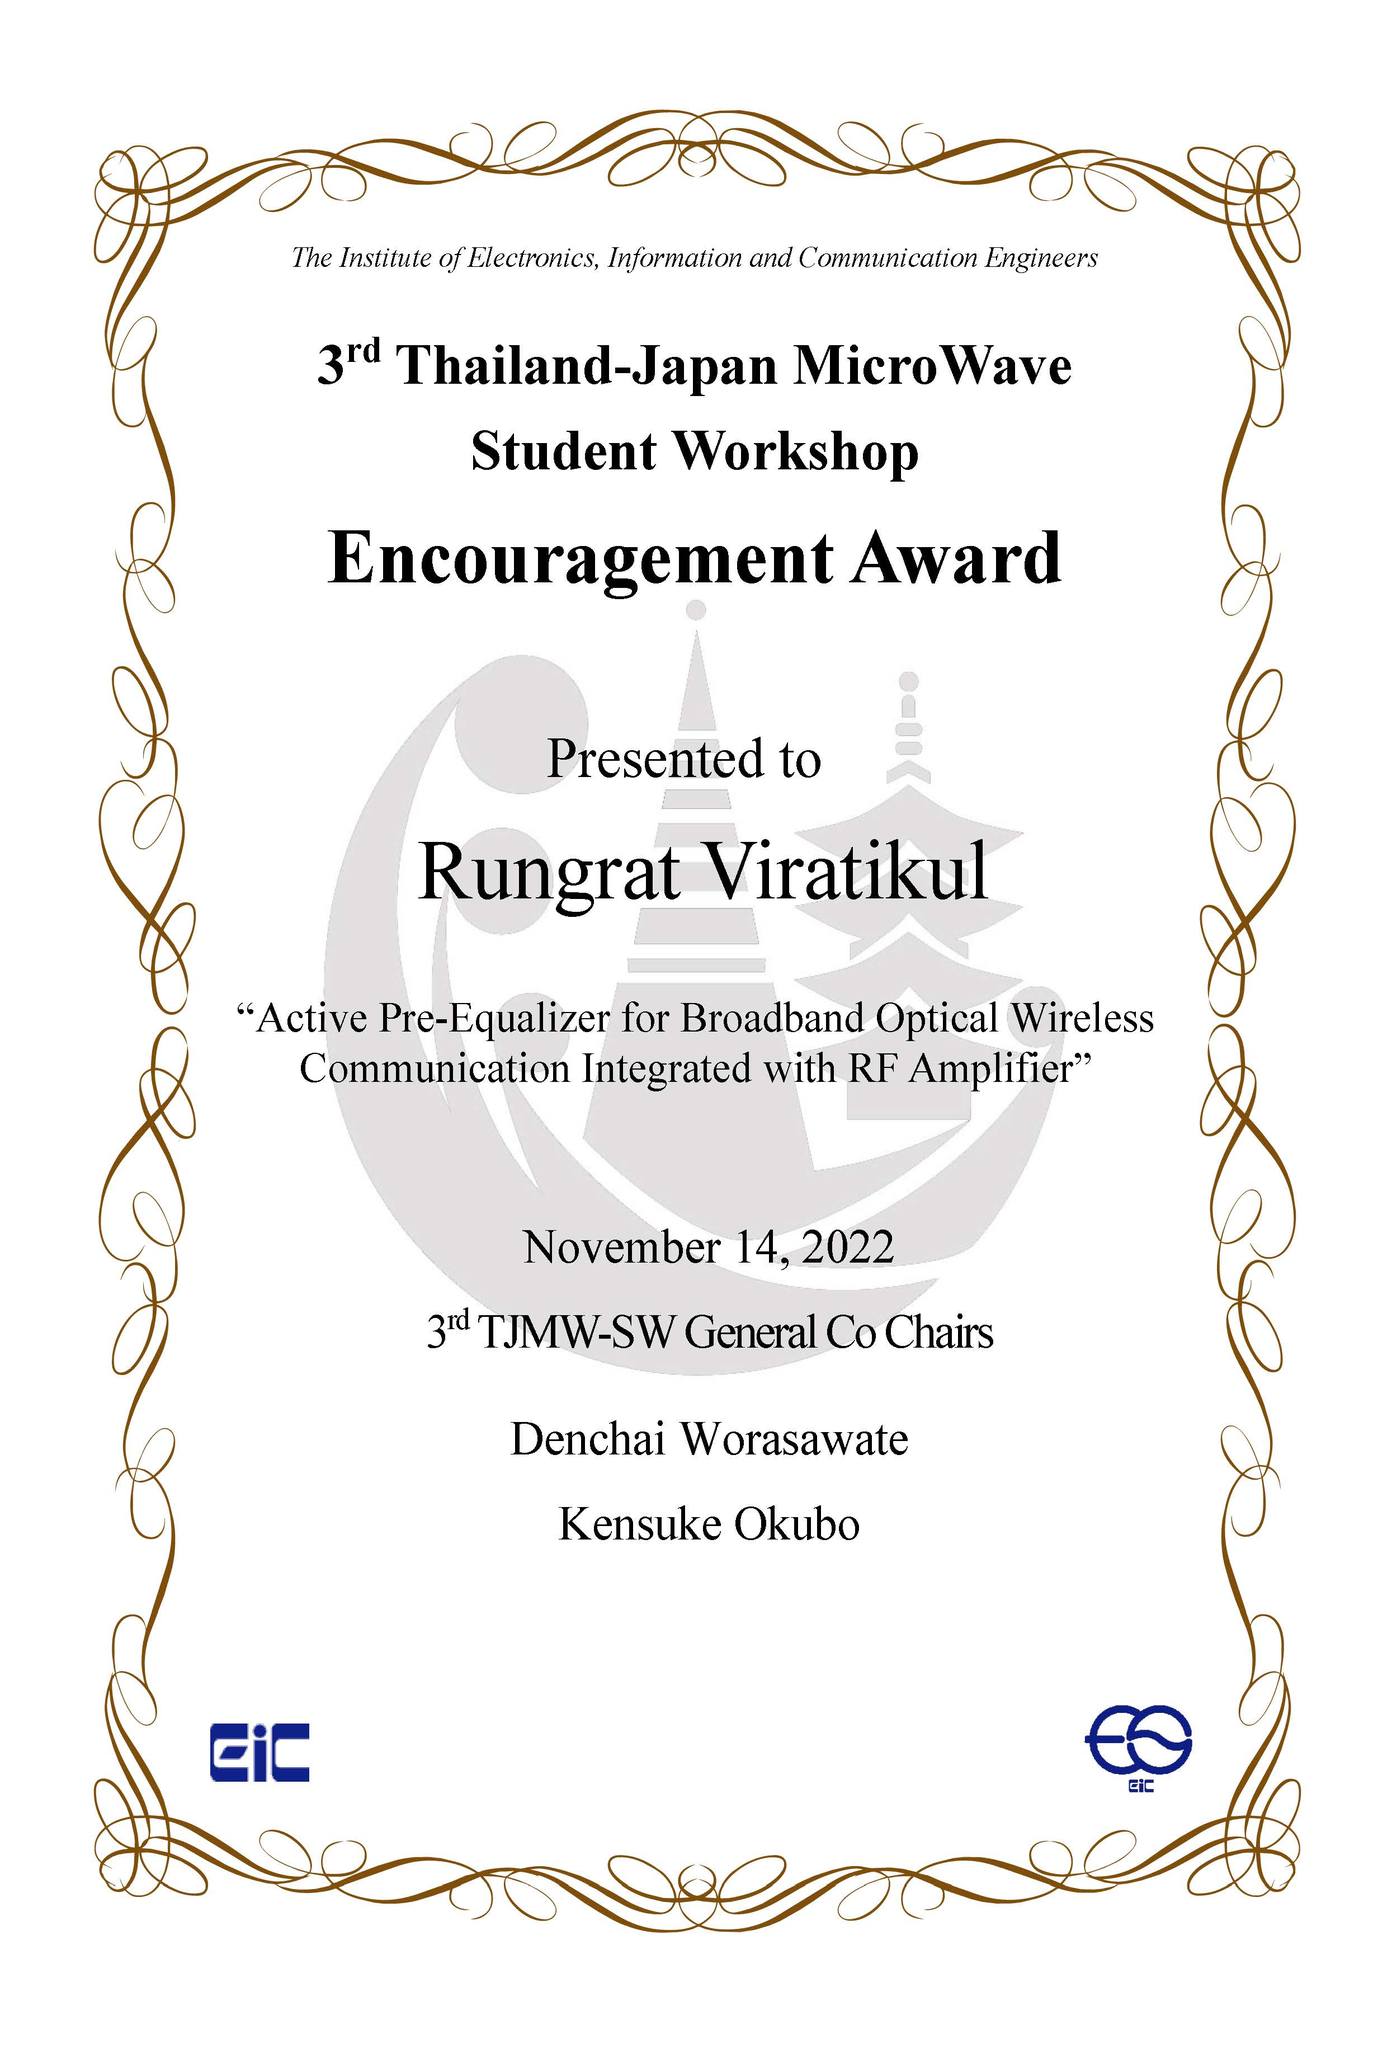 นิสิตภาควิชาฯ ได้รับรางวัล Encouragement Award จากการนำเสนอผลงานในการประชุมวิชาการ 3rd Thailand-Japan Microwave Student Workshop